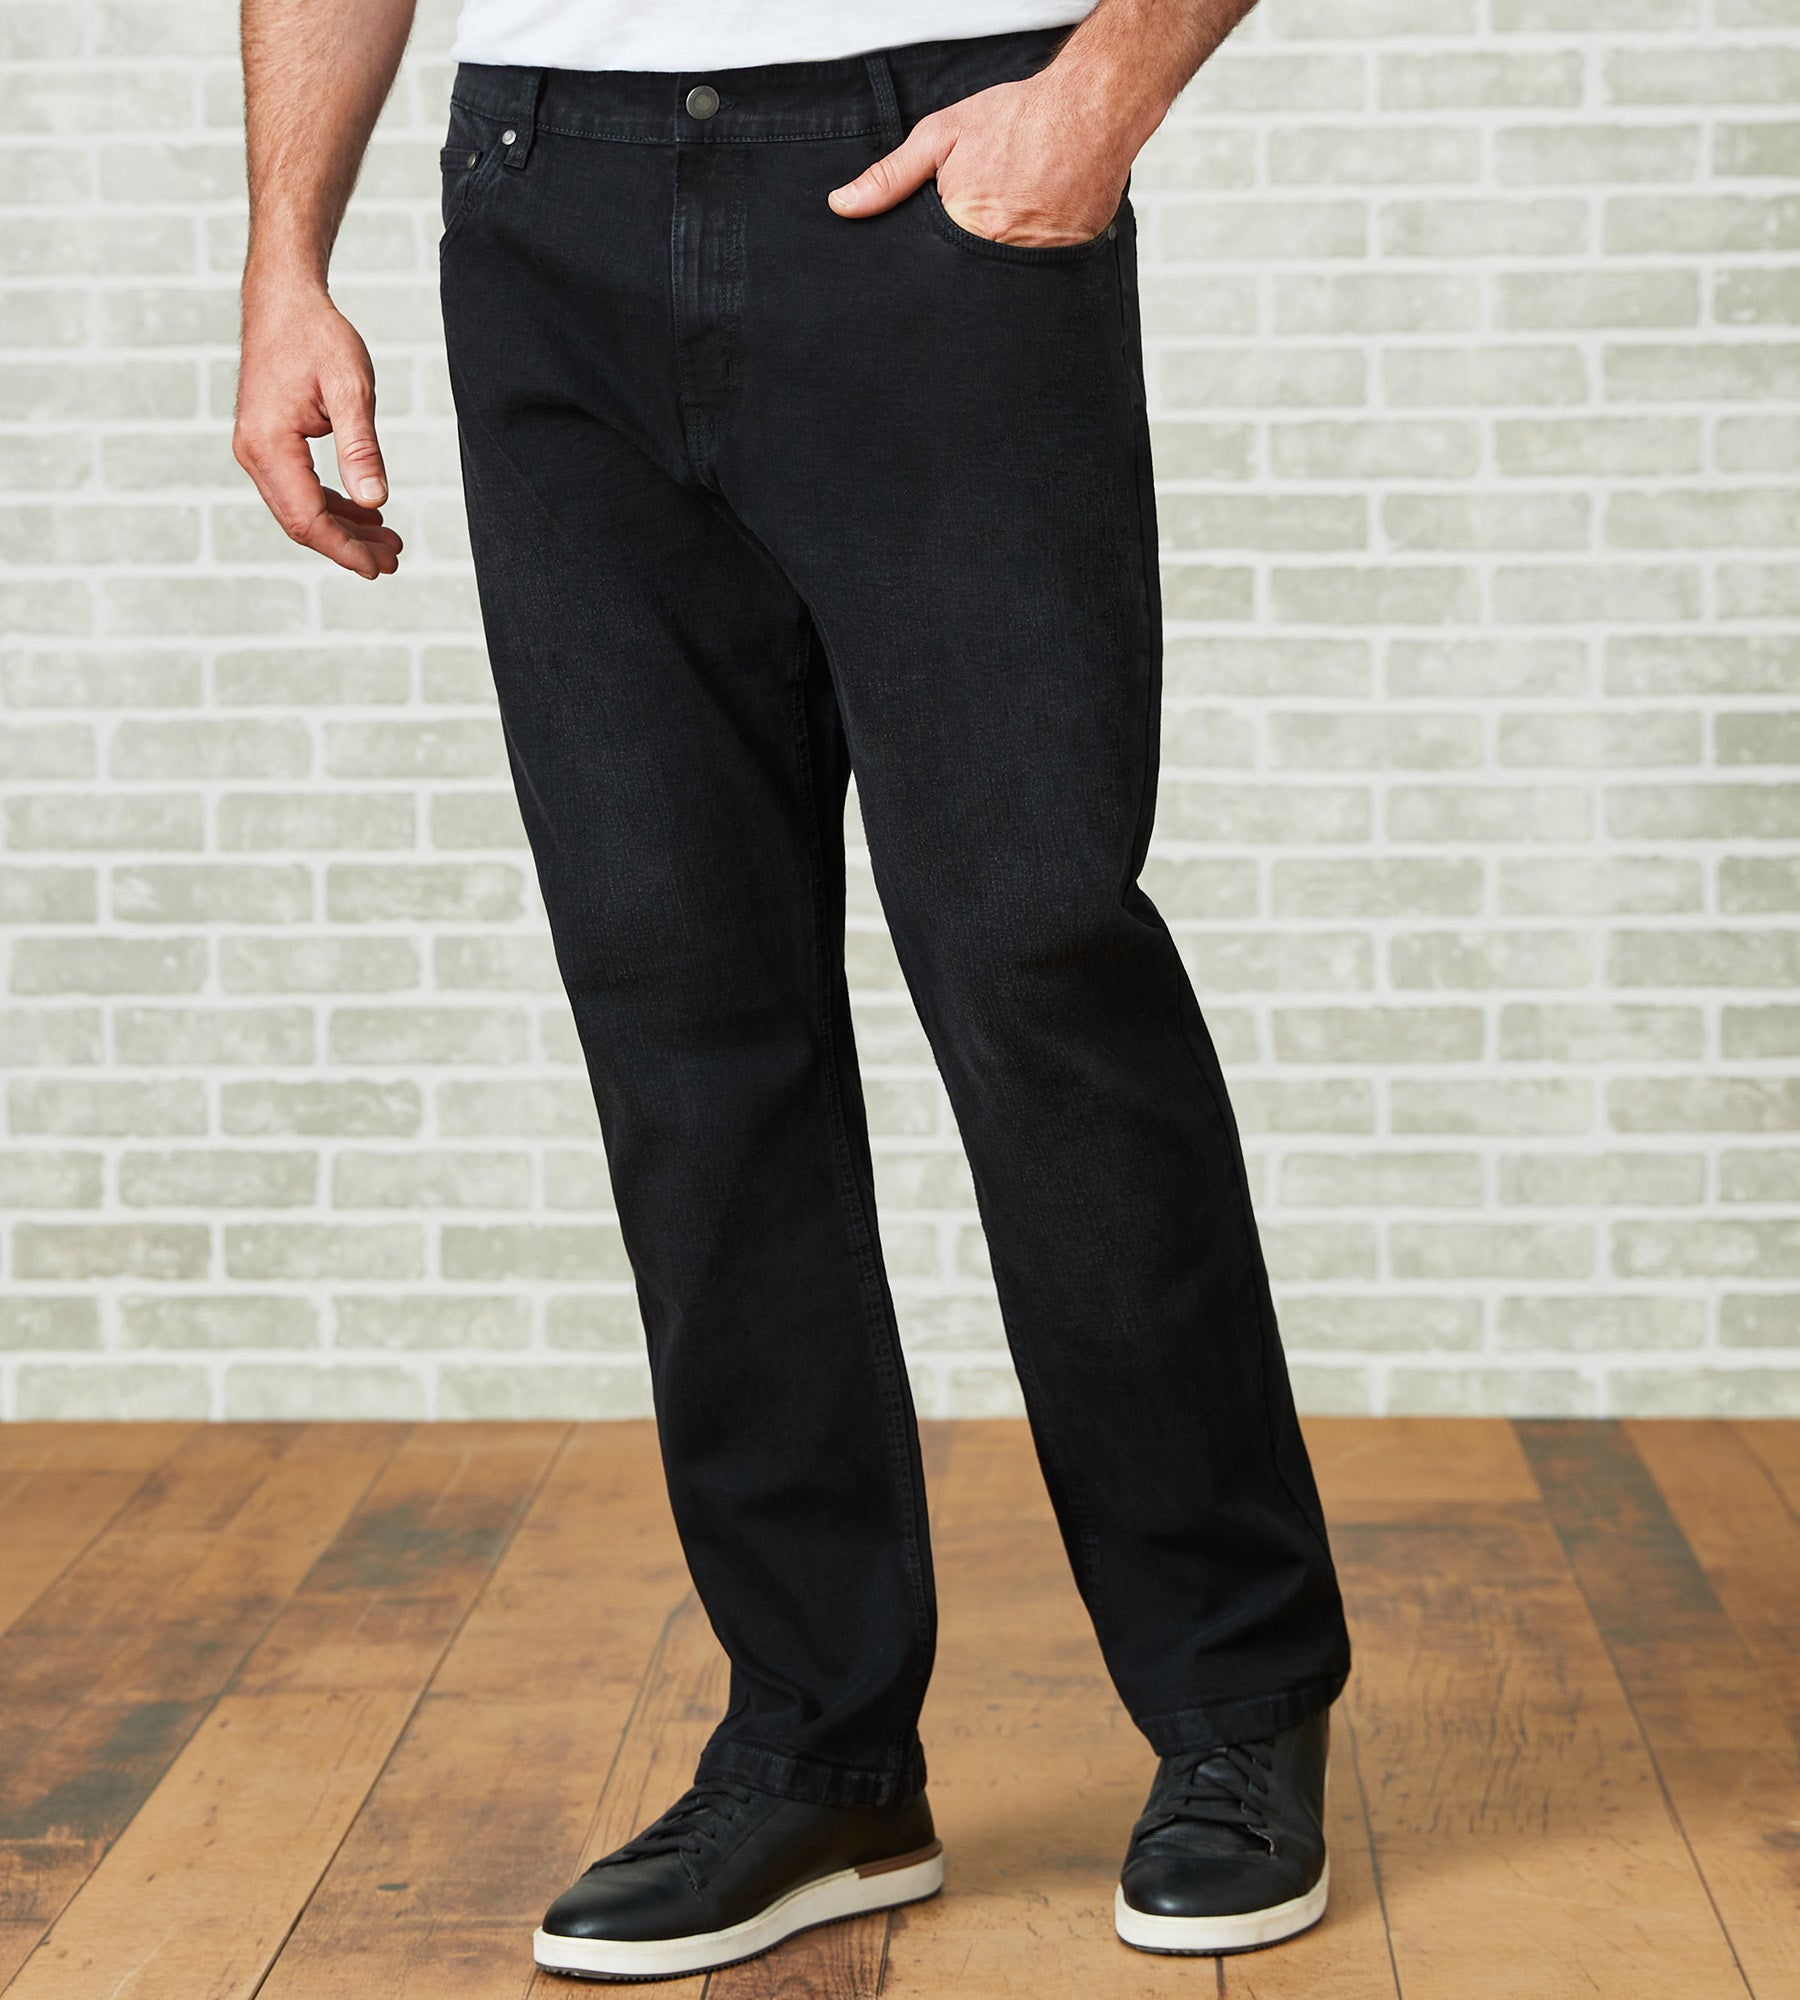 Men's Straight Leg Jeans - Denim for Men